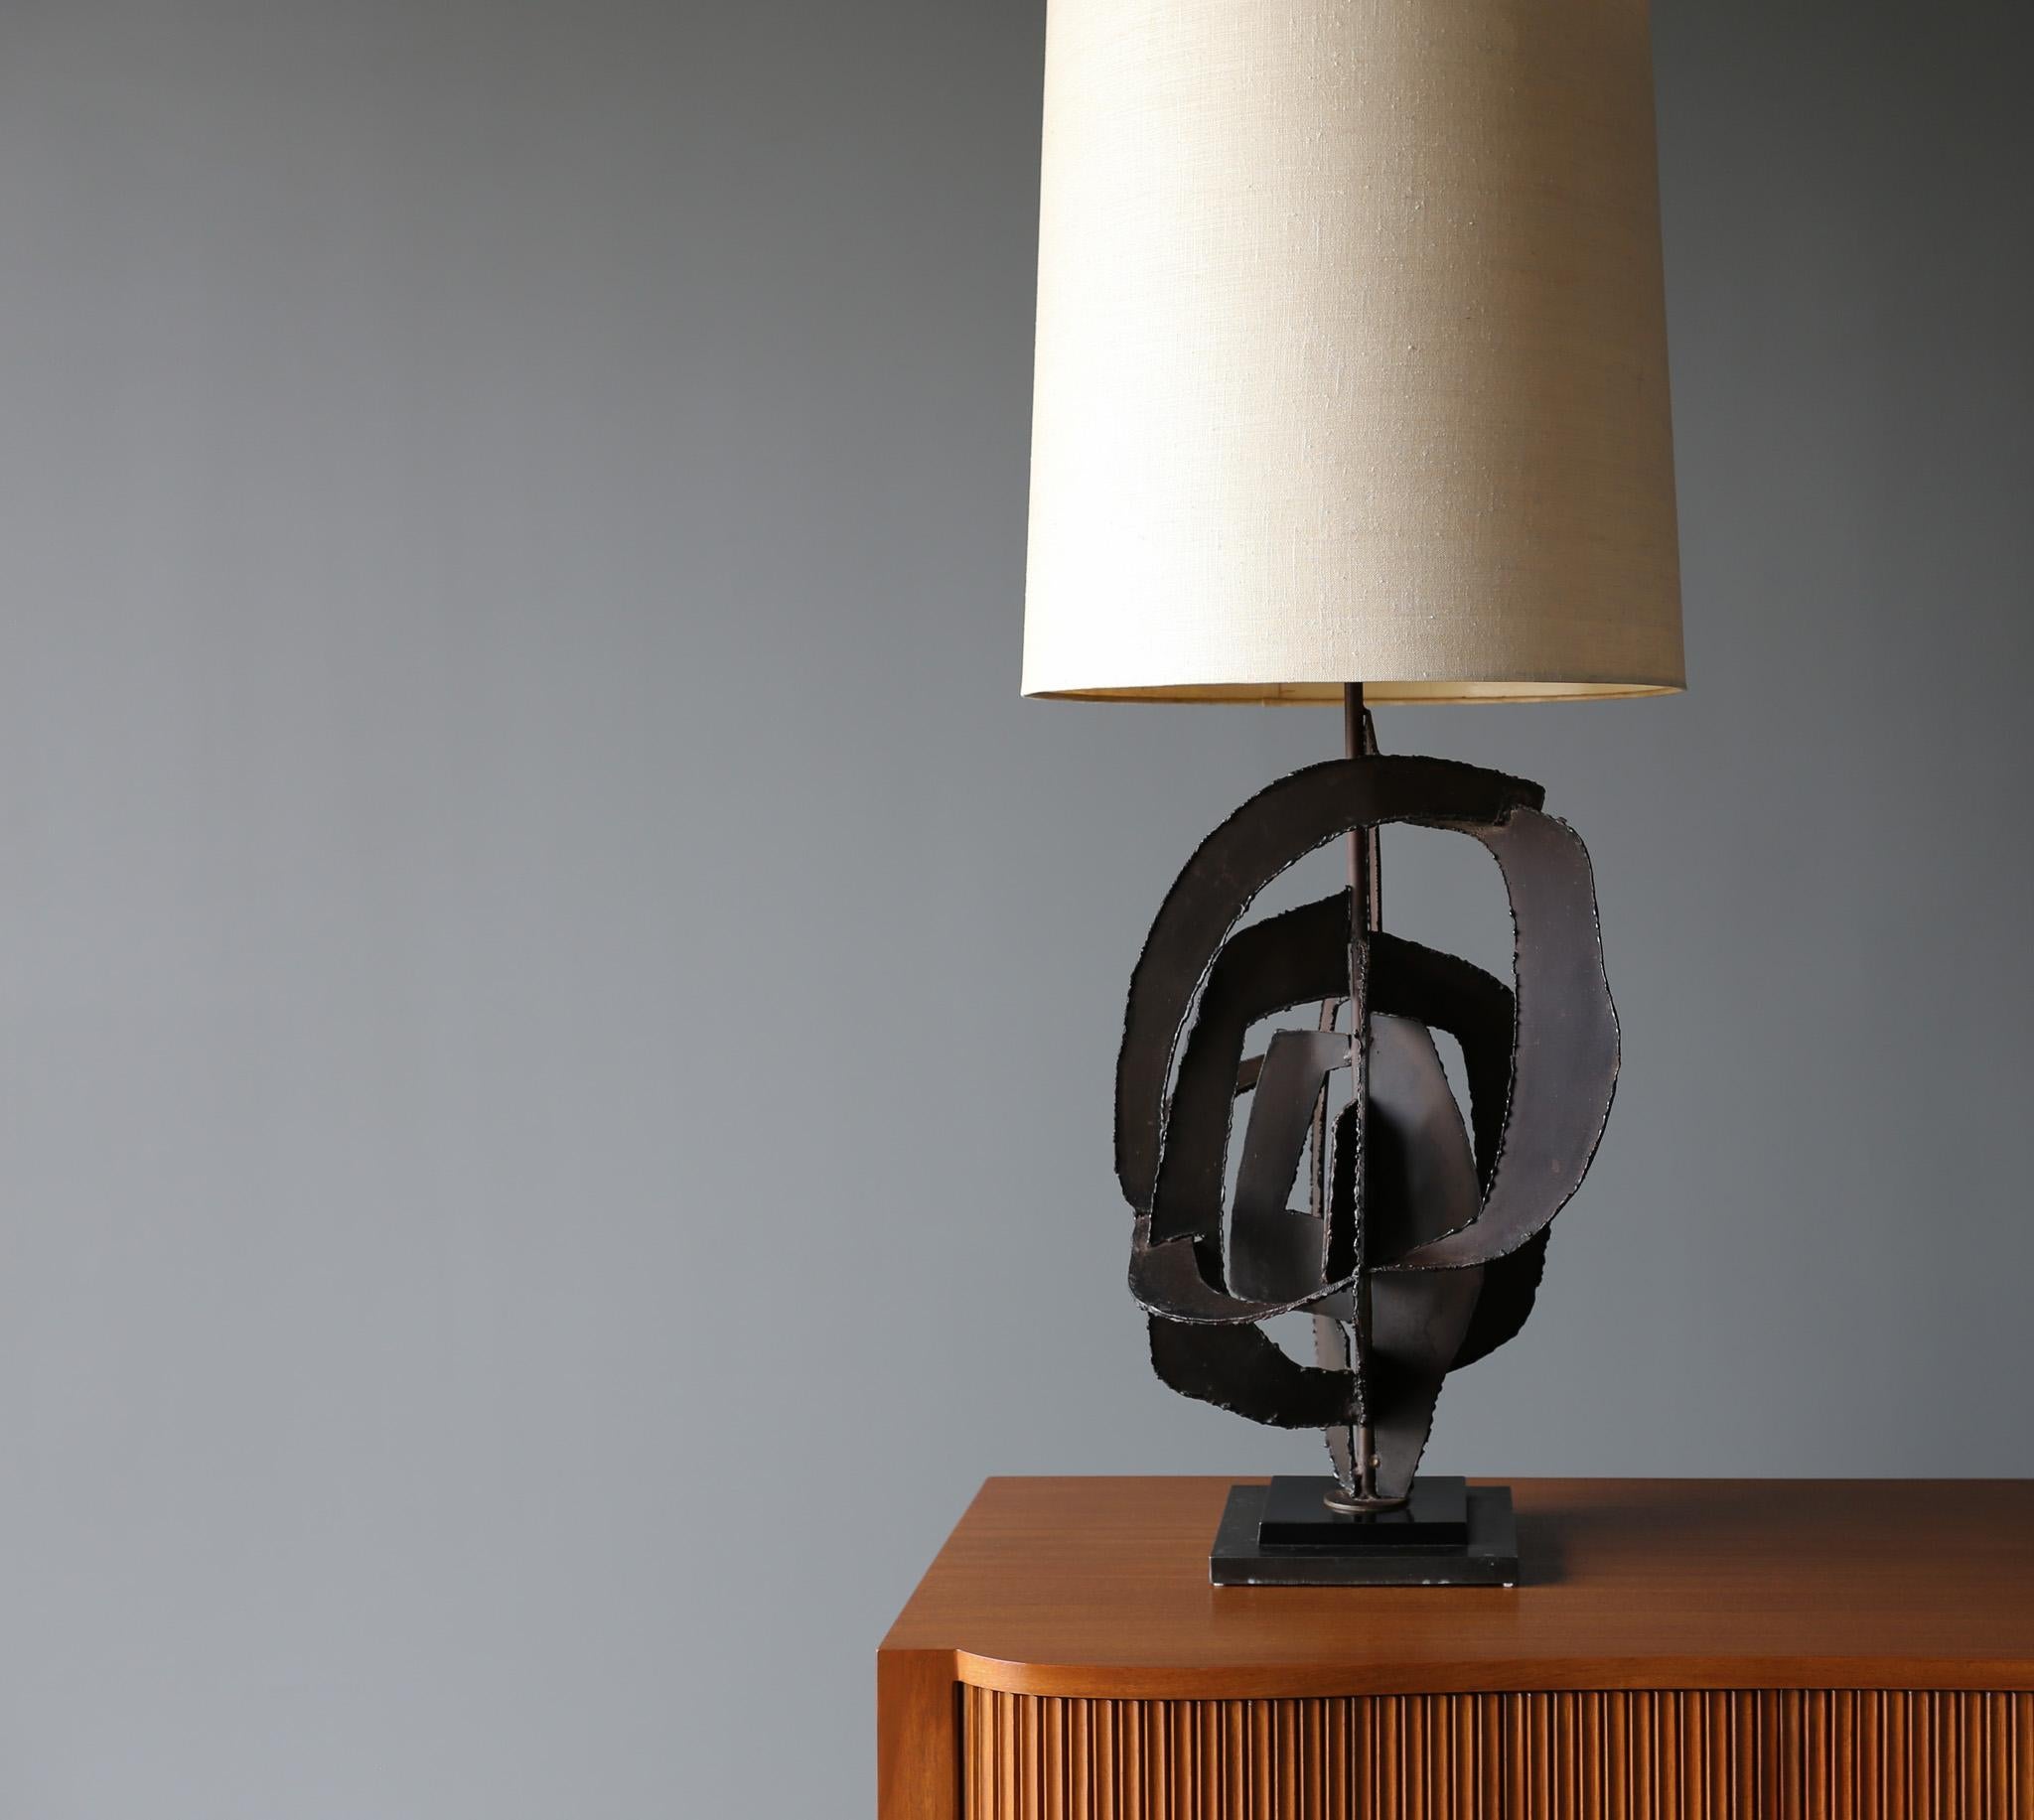 Skulpturale Tischlampe von Richard Barr für die STUDIO-Kollektion von Laurel, um 1965 (Moderne der Mitte des Jahrhunderts)